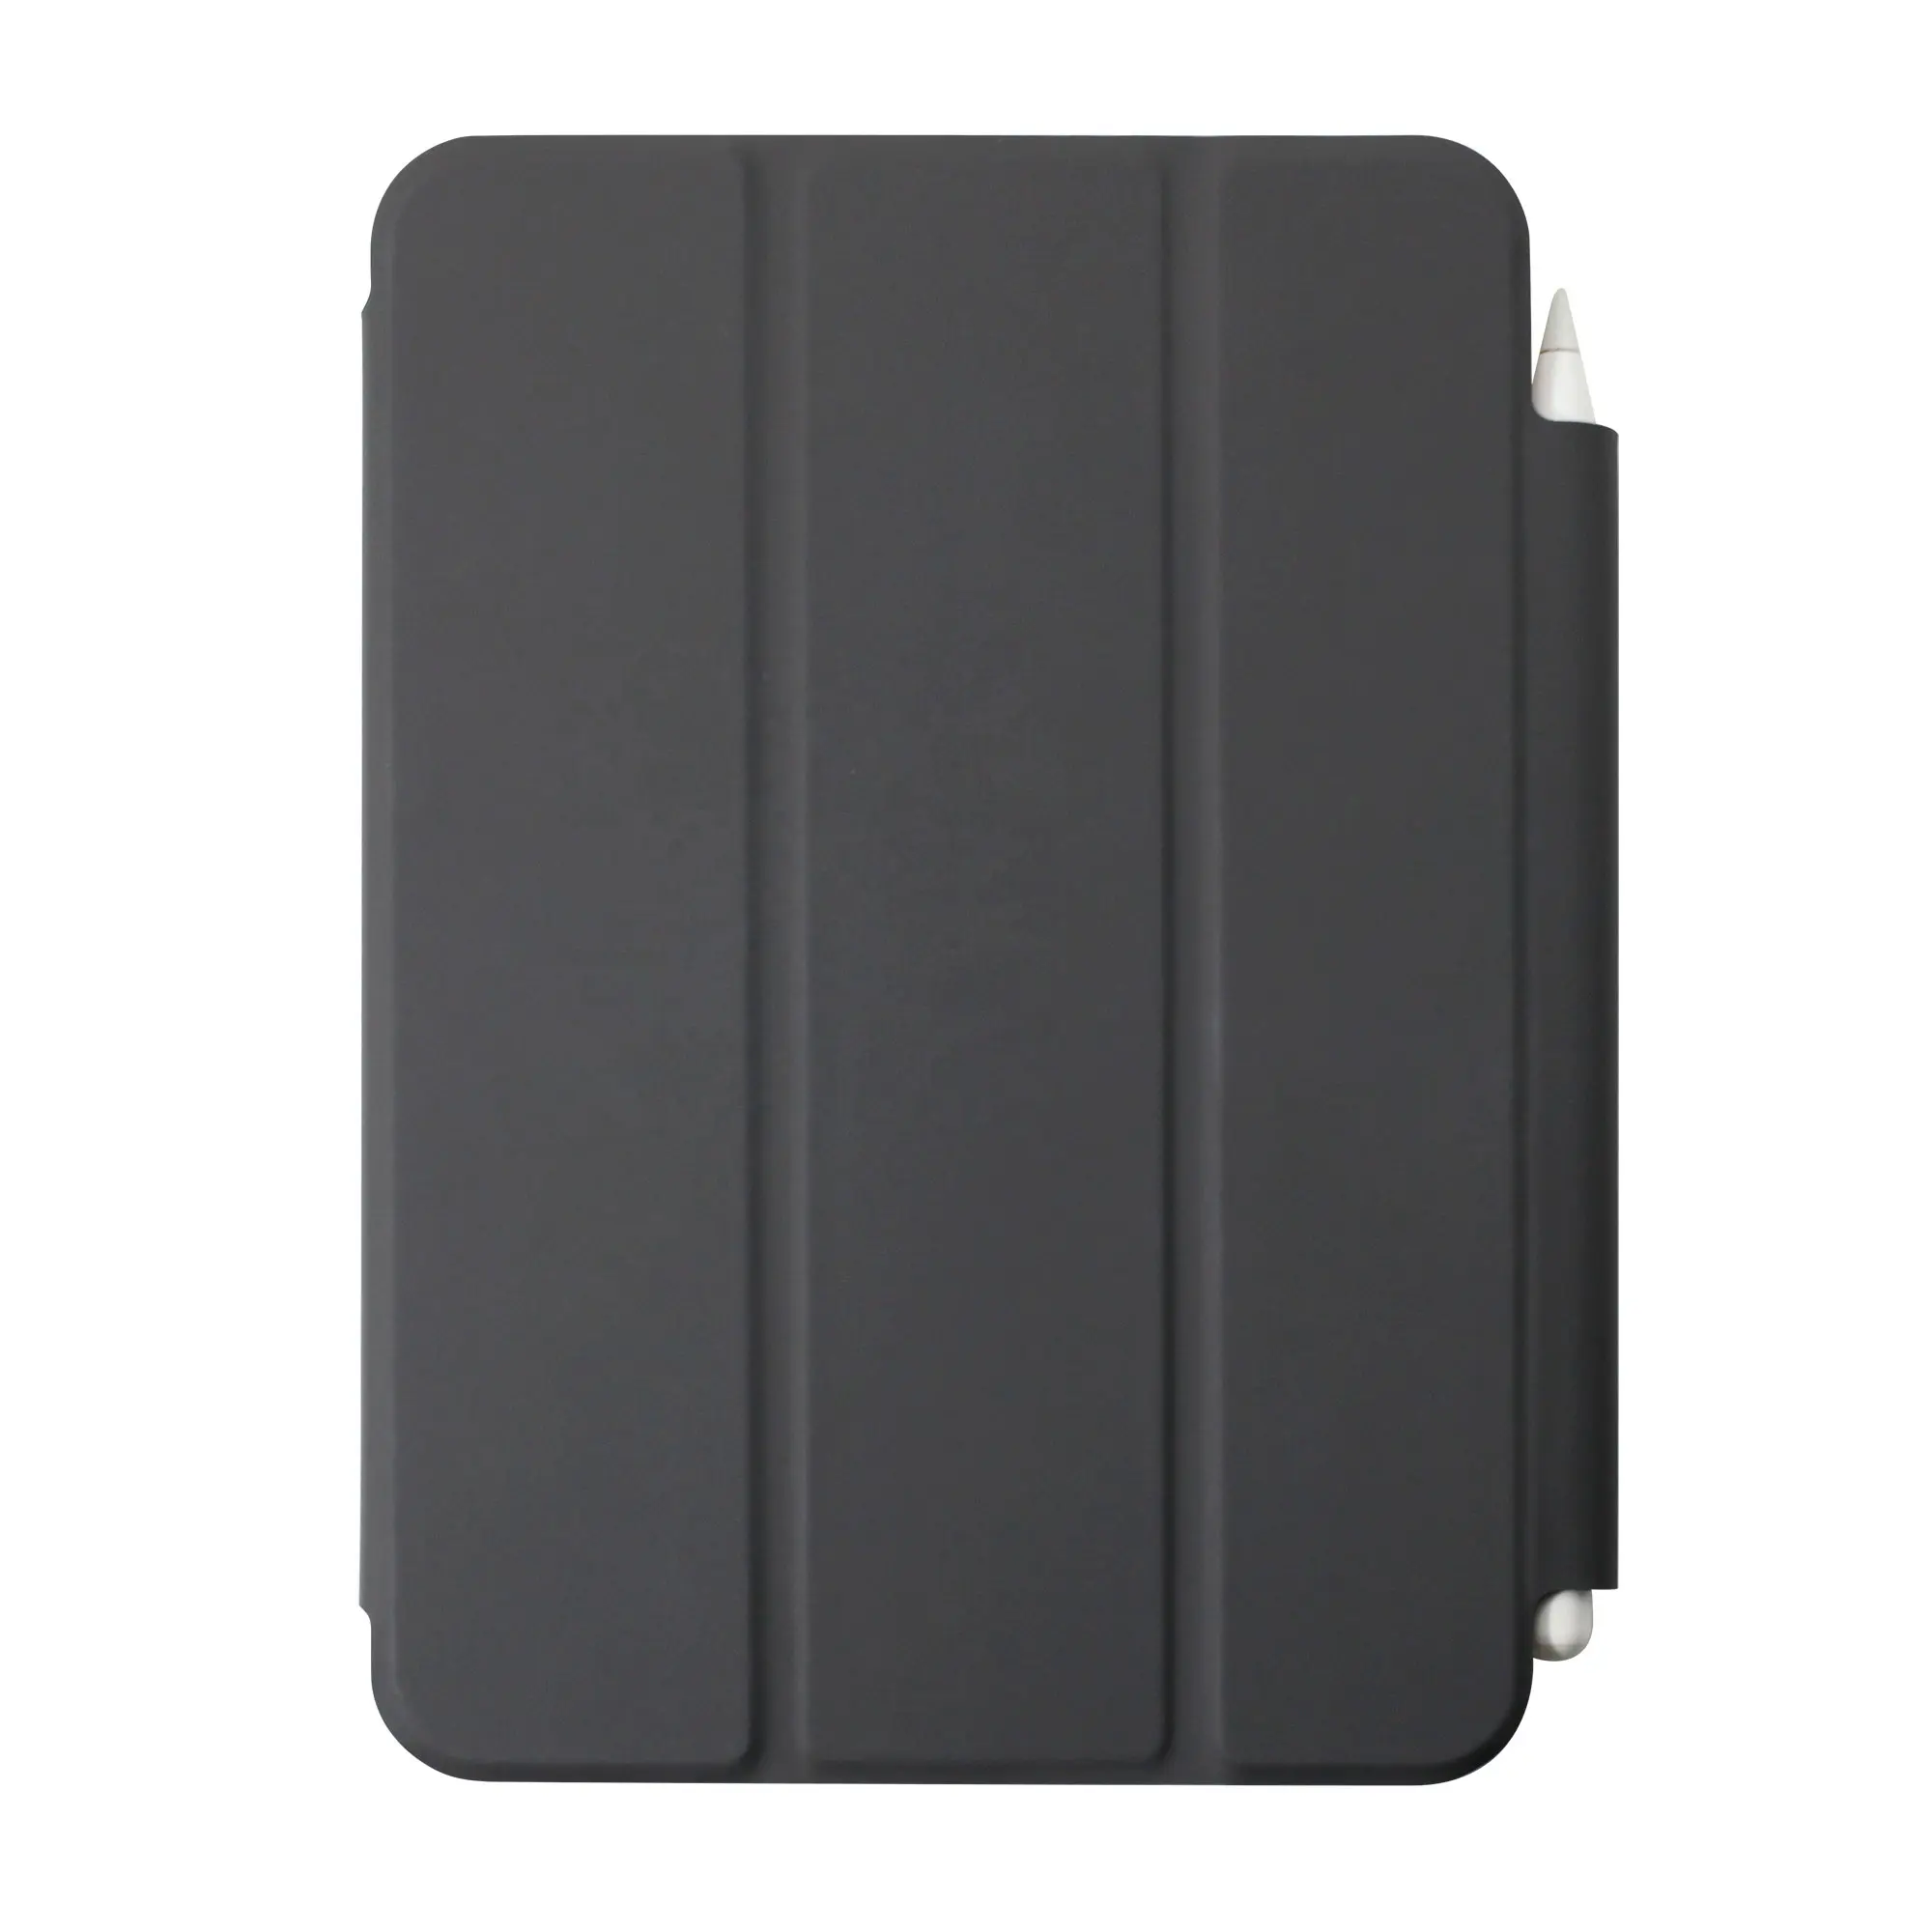 뜨거운 판매 태블릿 케이스 울트라 슬림 충격 방지 PU 가죽 방진 스마트 커버 3 배 보호 쉘 iPad 미니 6 케이스